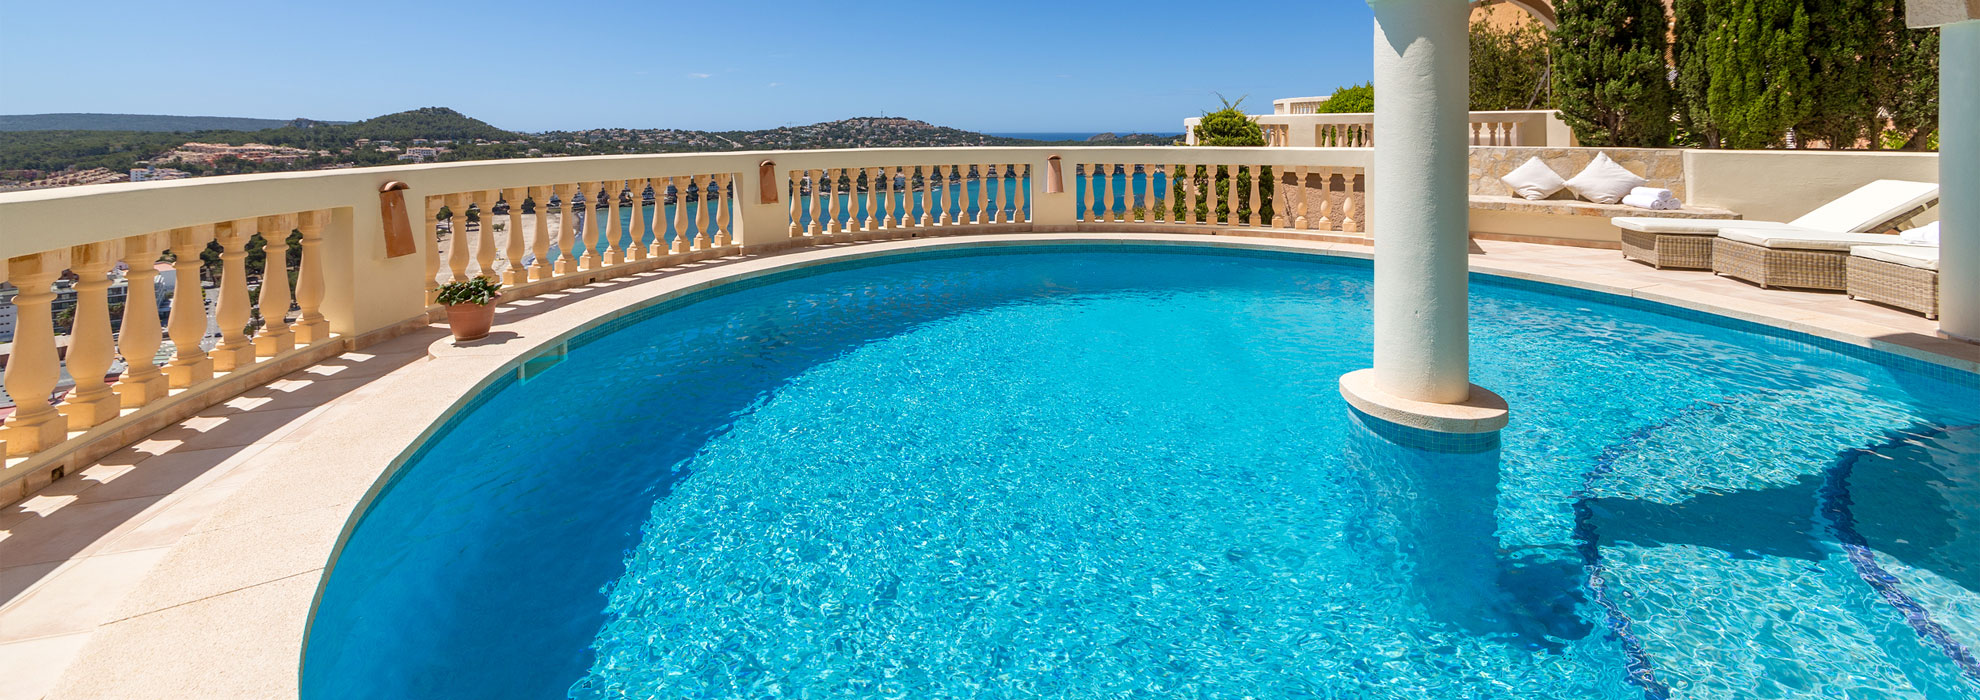 Villa with pool - Buena Vista - Santa Ponca